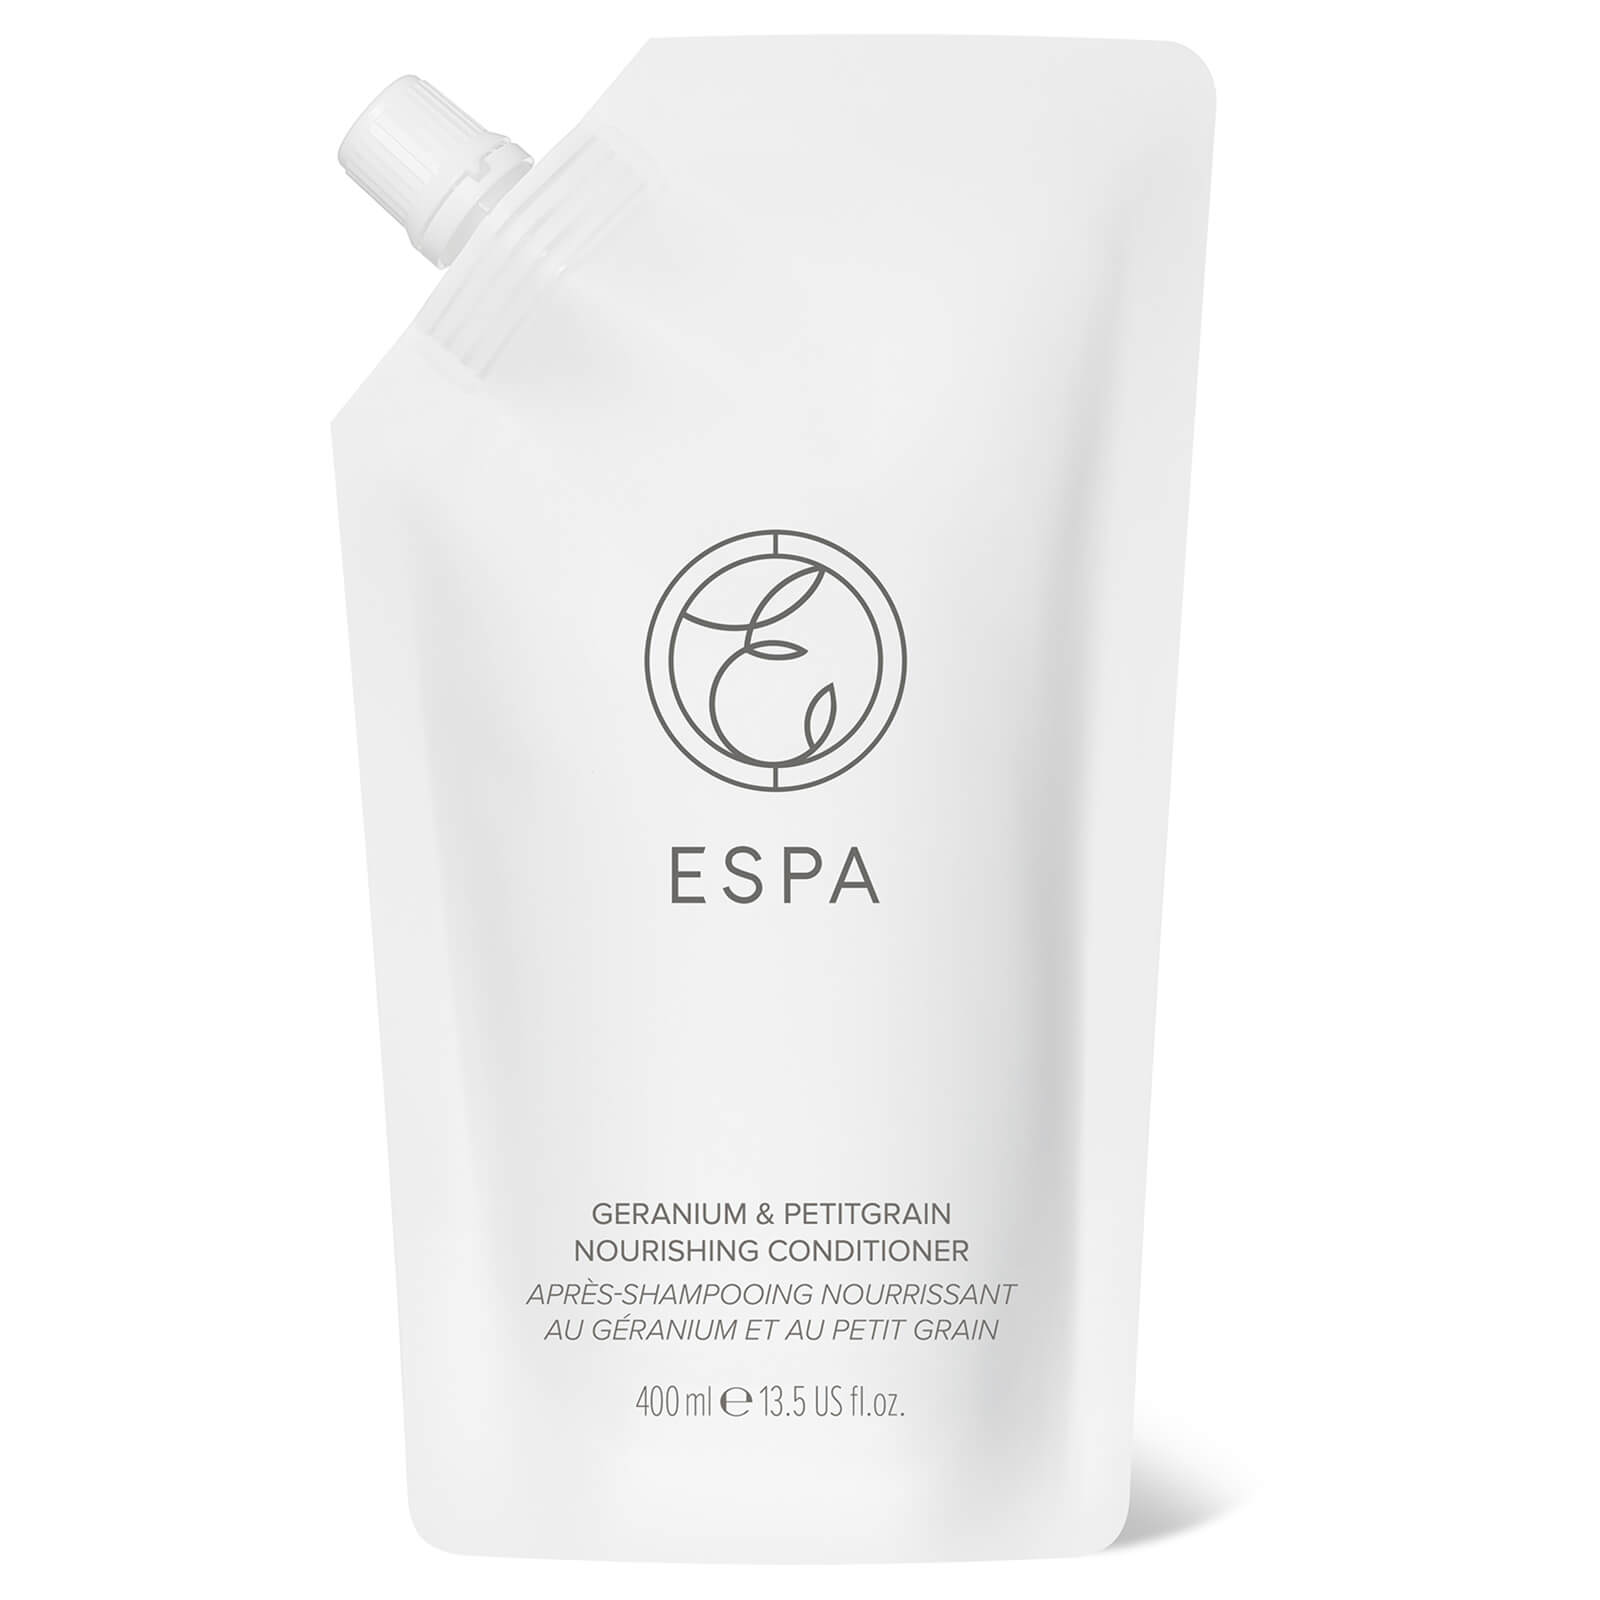 ESPA Essentials Geranium and Petitgrain Conditioner 400ml